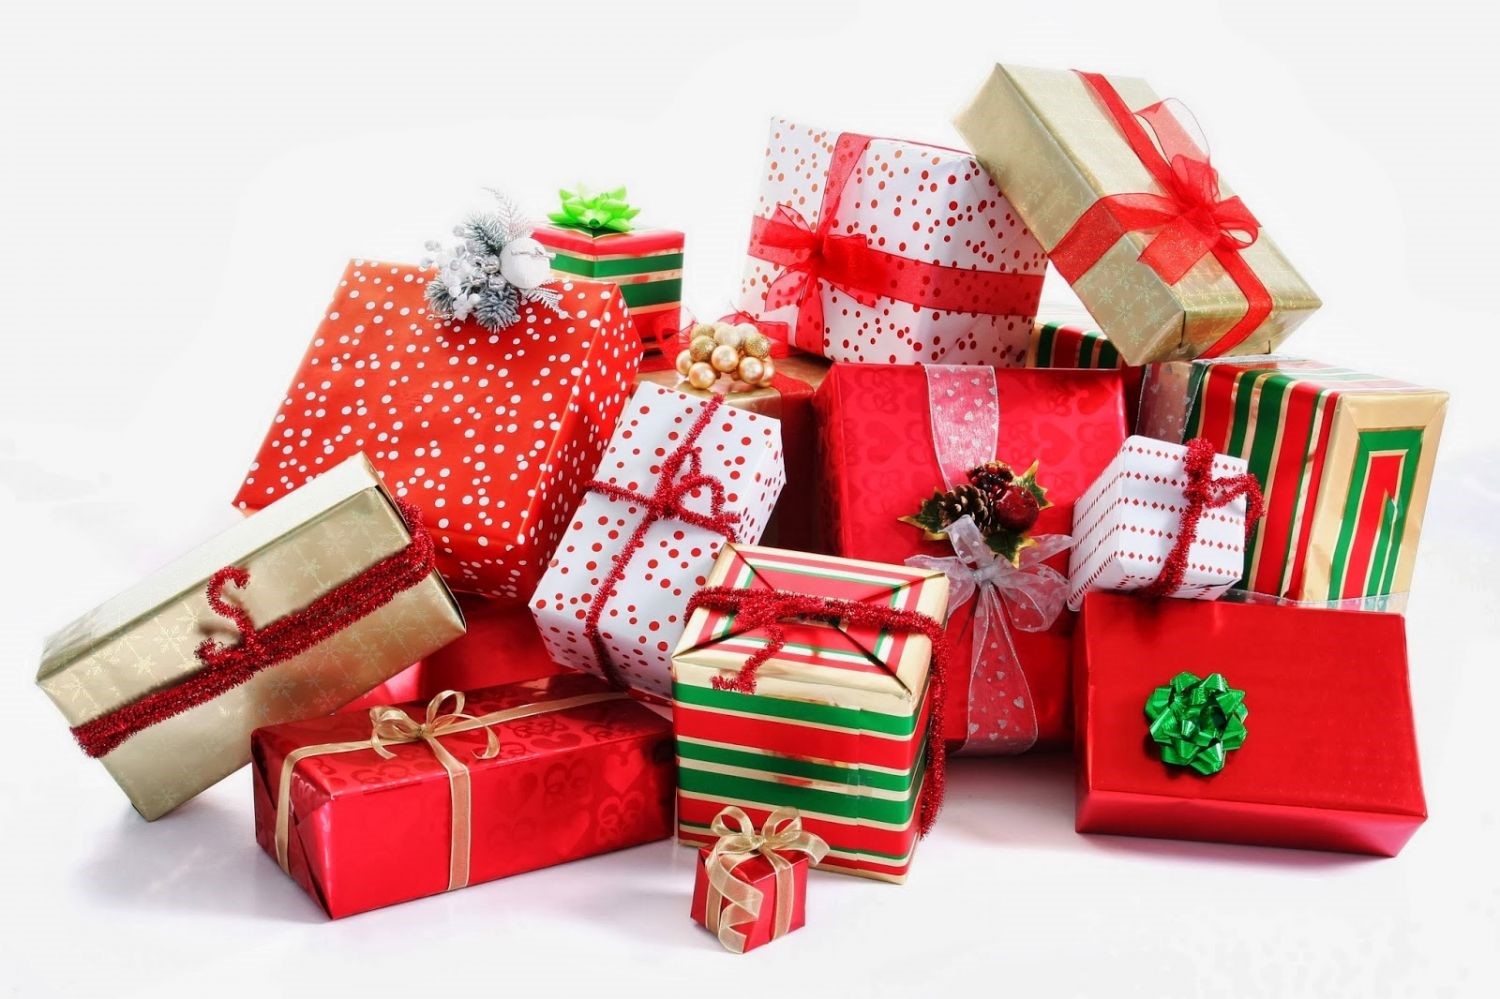 Ιδέες για Χριστουγεννιάτικα δώρα